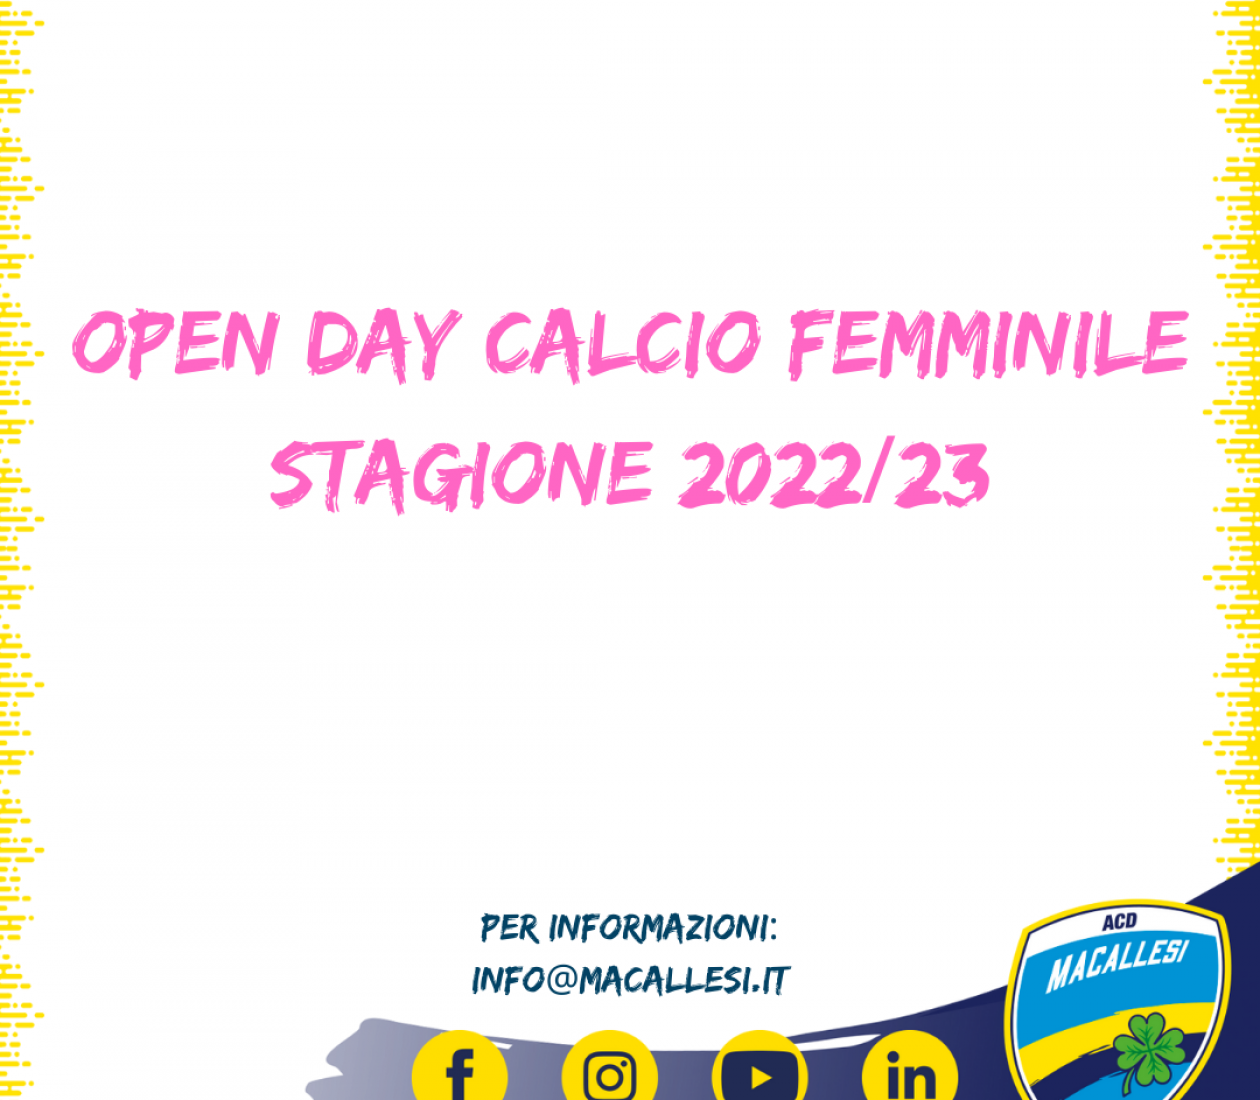 Open day calcio femminile stagione 2022/23